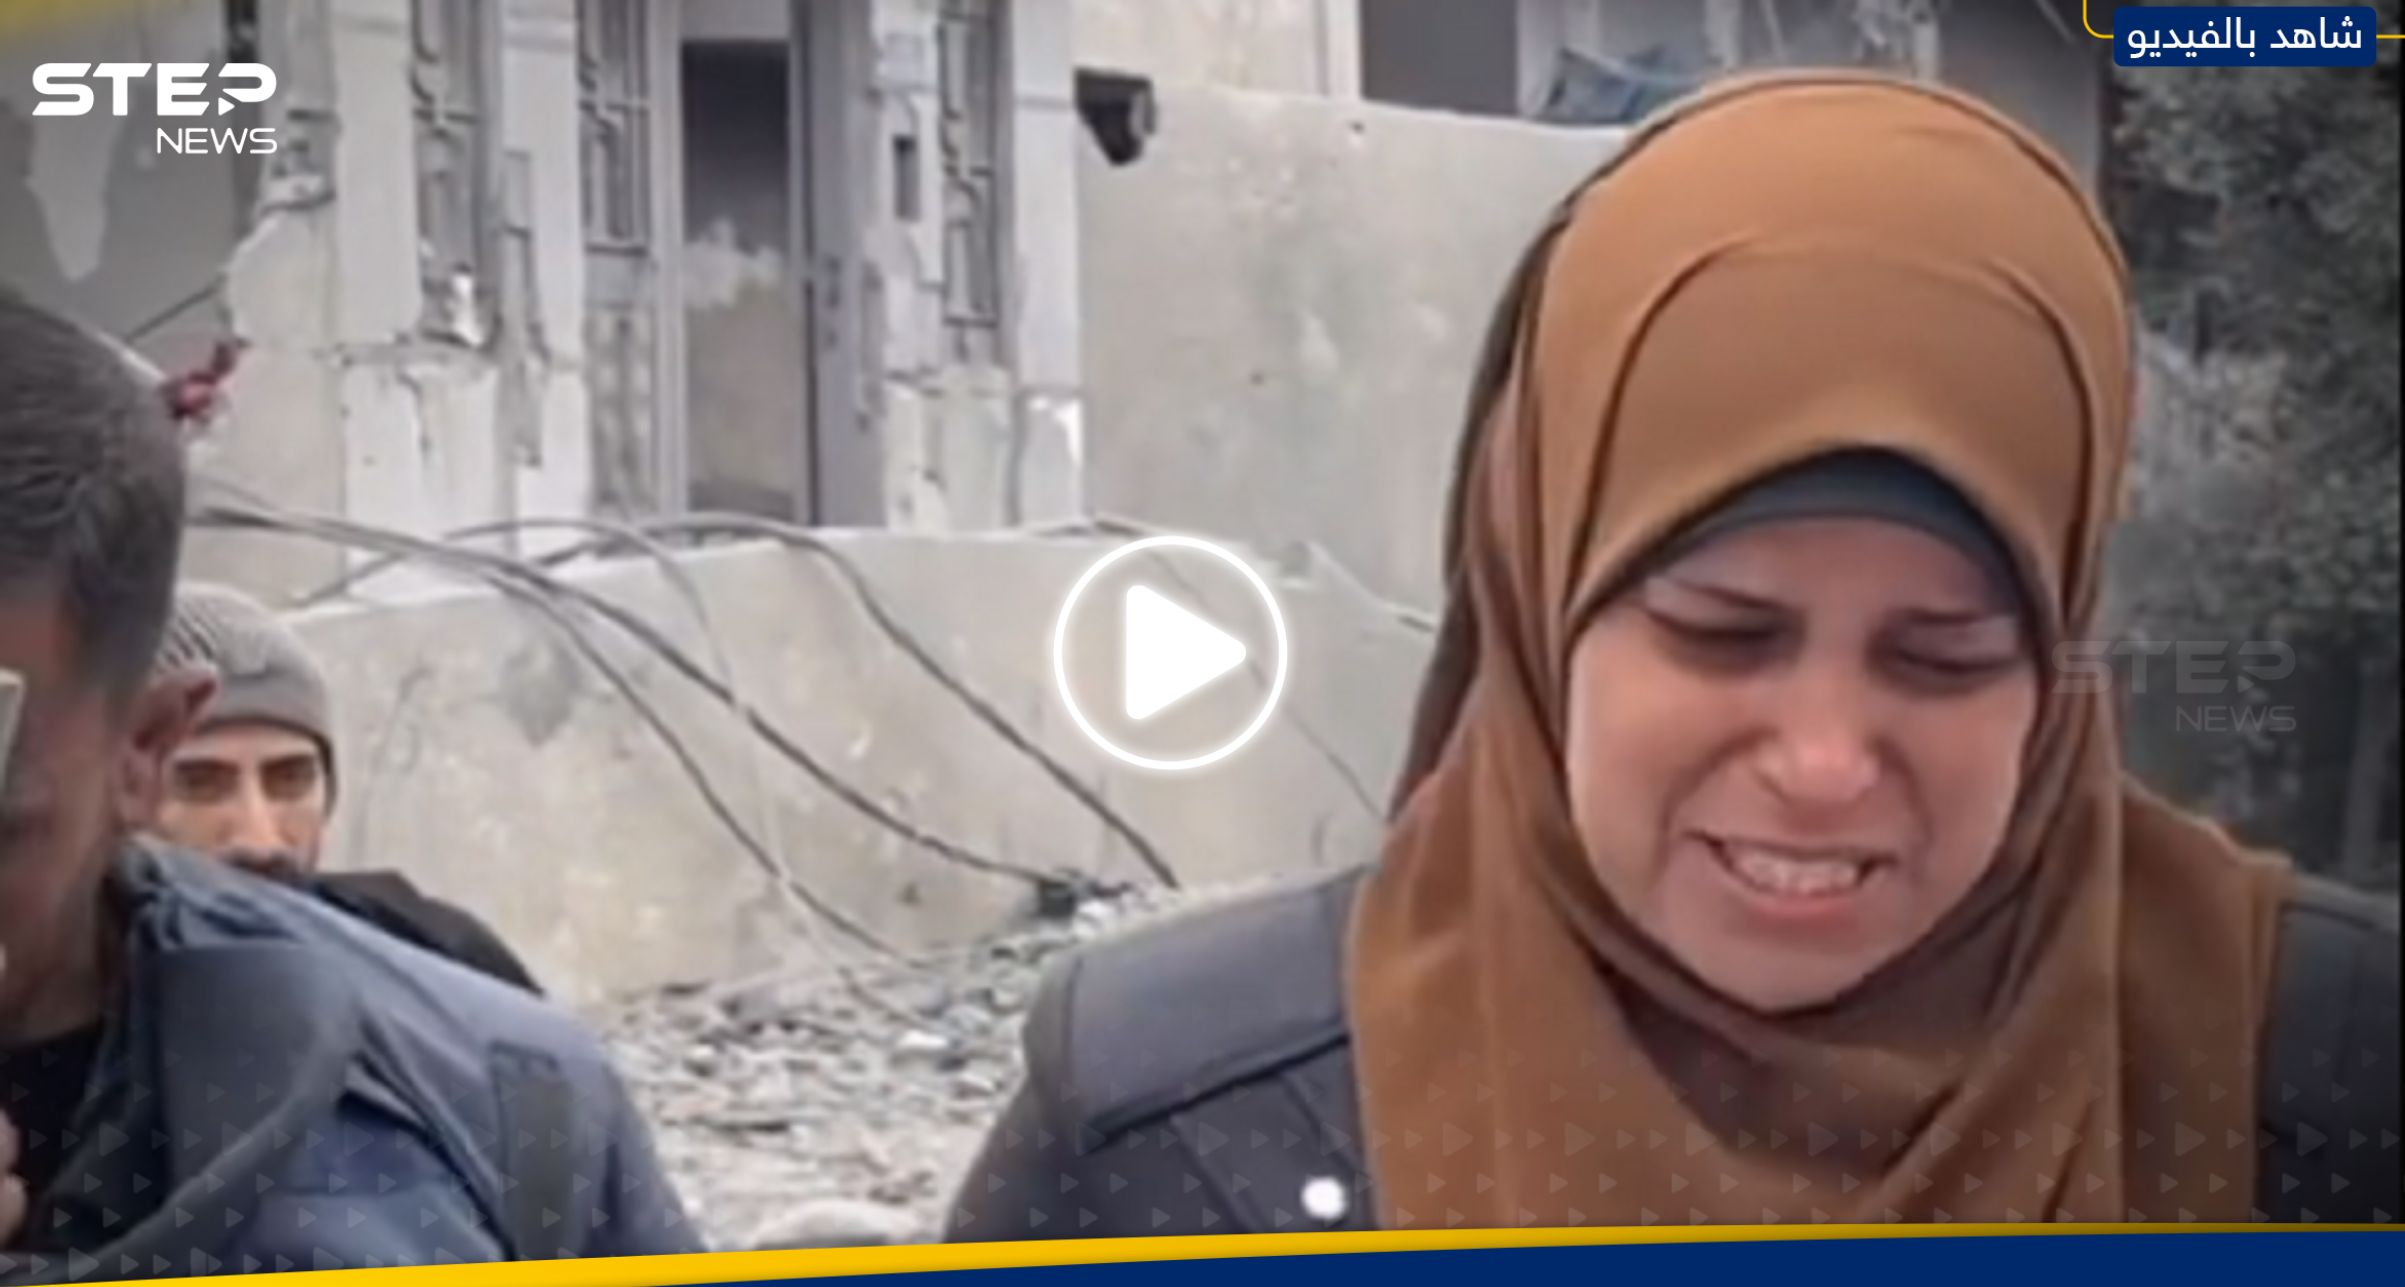 فيديو مؤثر لسيدة فلسطينية ذهبت لإحضار الطحين فوجدت منزلها قد قصف فوق رؤوس عائلتها